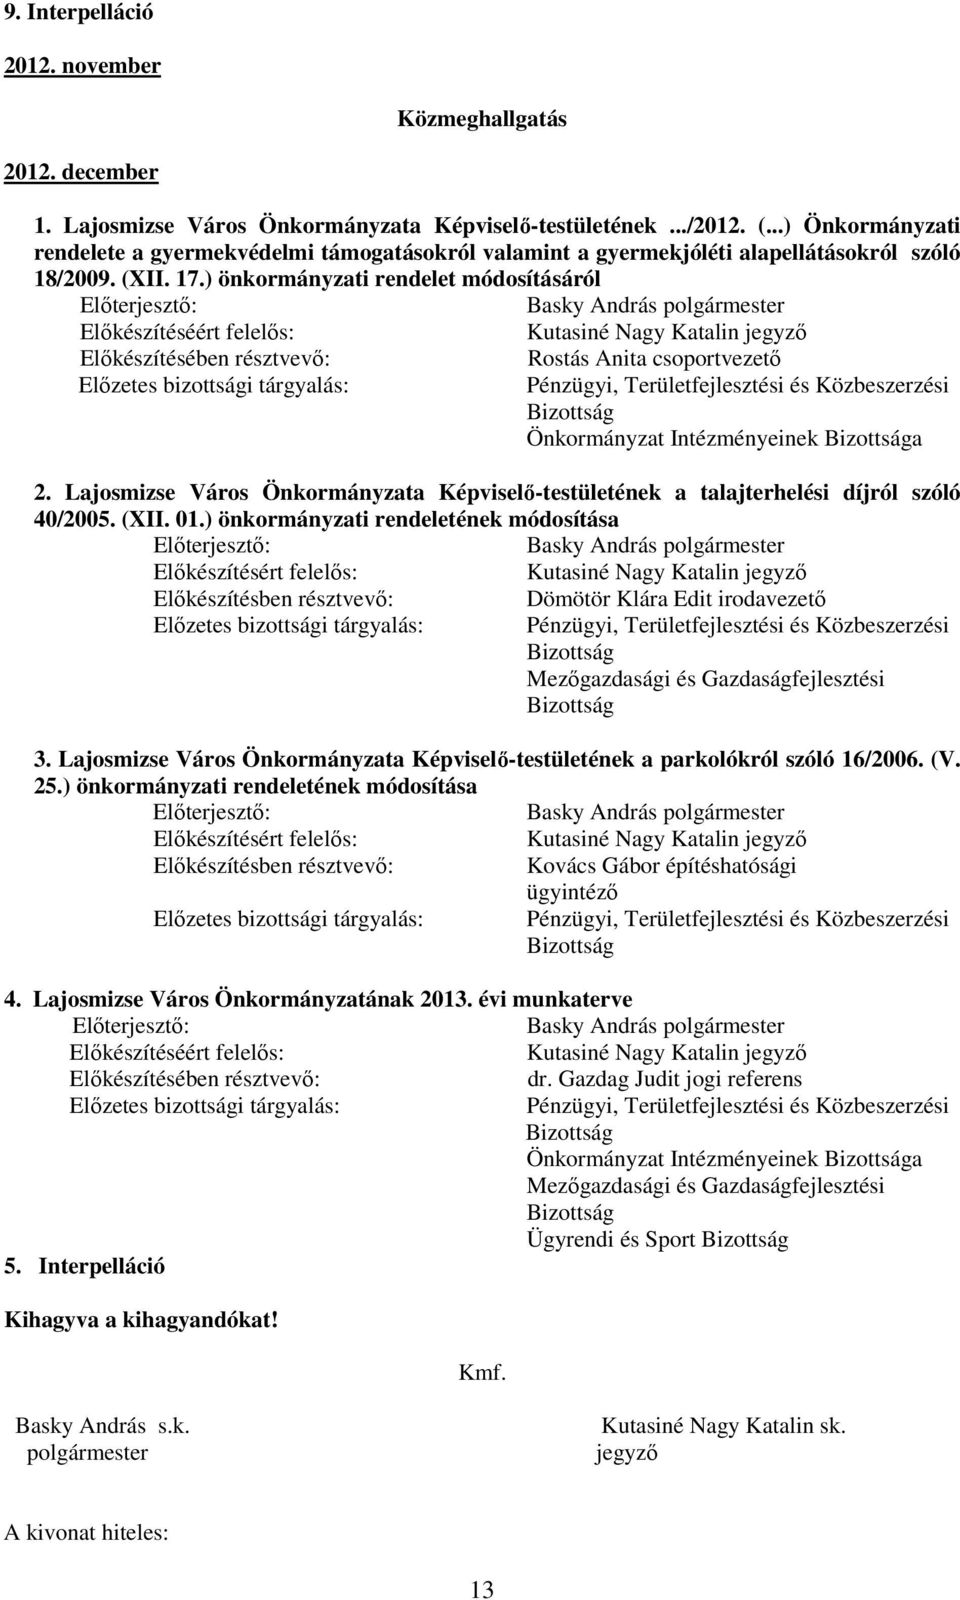 Lajosmizse Város Önkormányzata Képviselı-testületének a talajterhelési díjról szóló 40/2005. (XII. 01.) önkormányzati rendeletének módosítása 3.